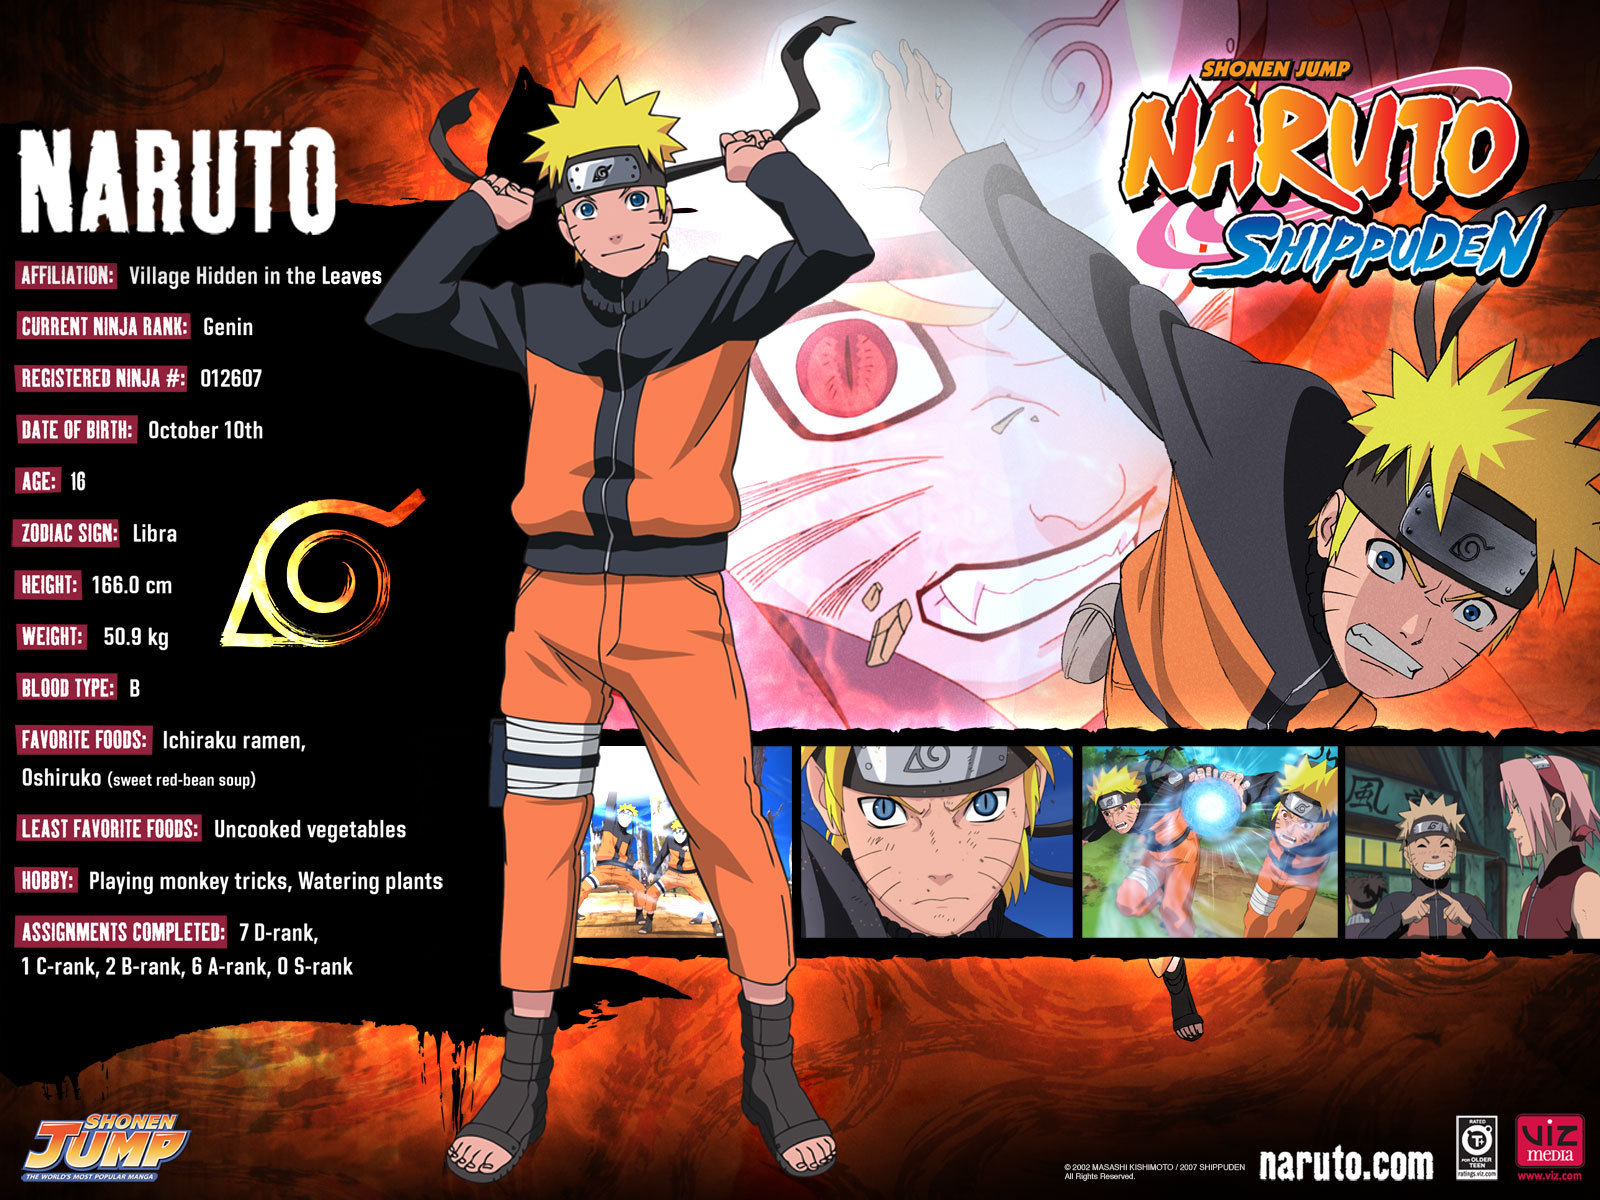  Gambar  Naruto  Shippuden 2013